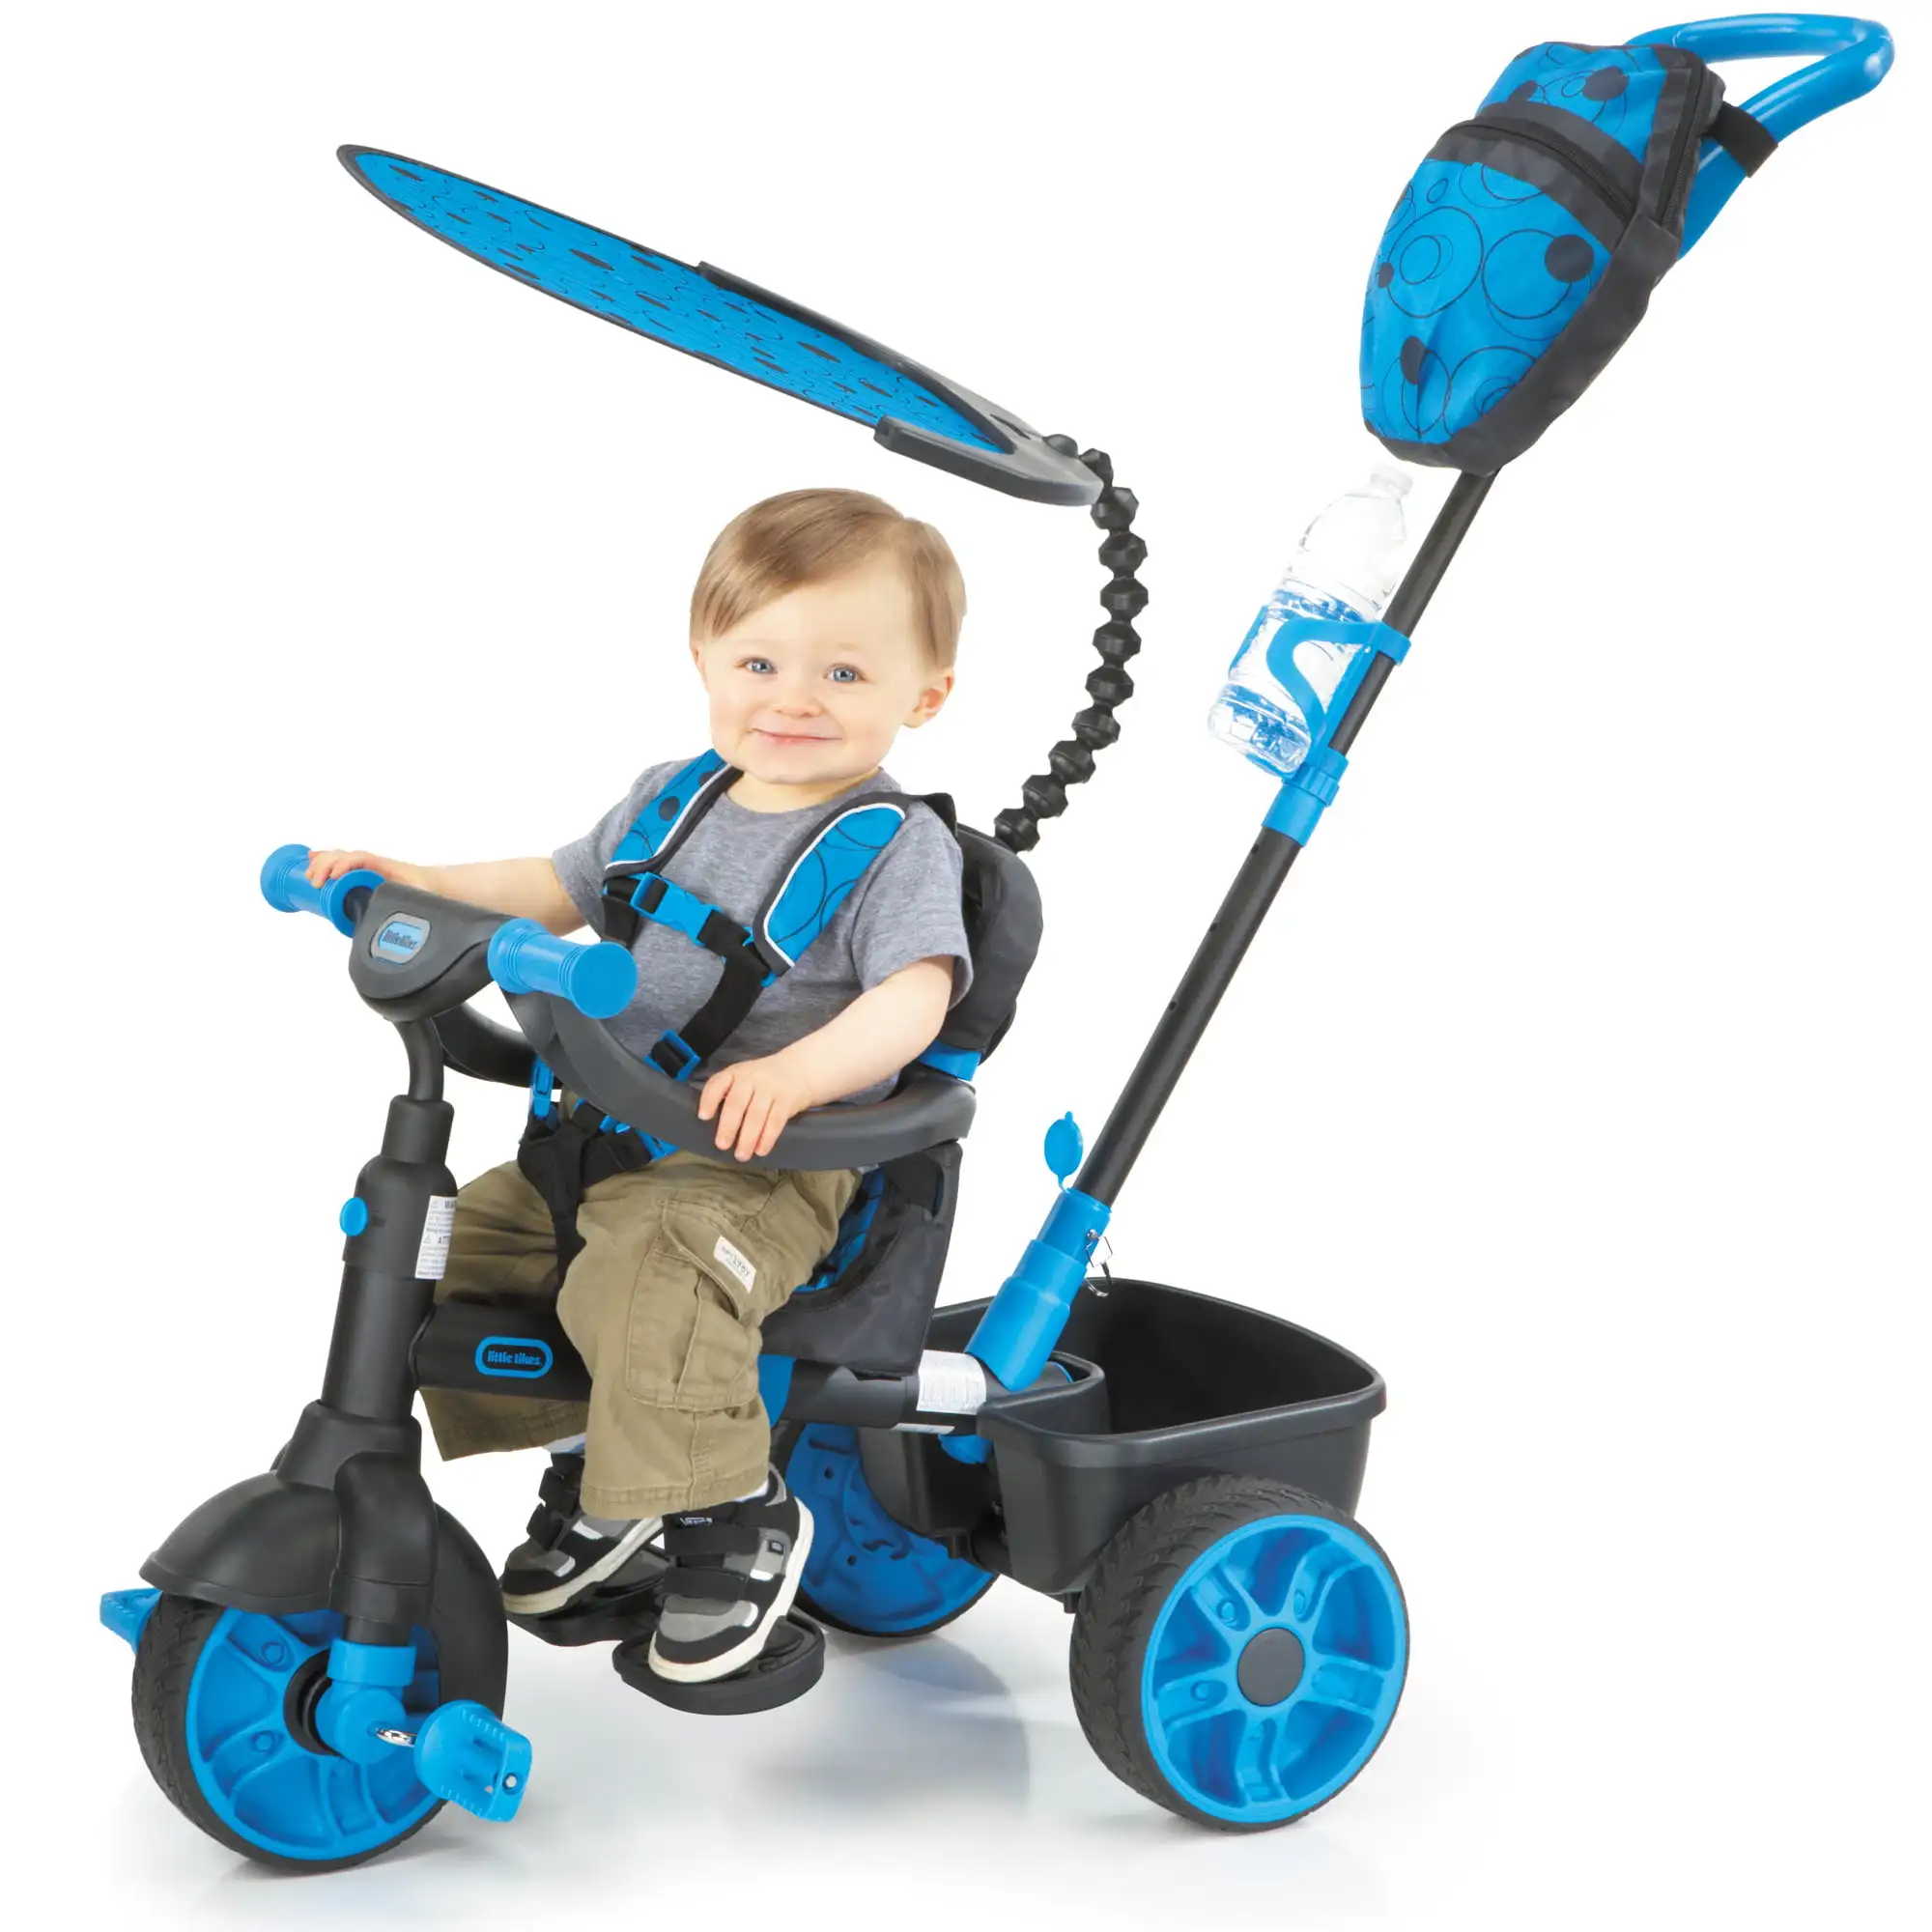 

4-в-1 Deluxe Edition Trike неоново-голубой, трансформер трехколесный велосипед для малышей с 4 этапами роста и теневой навес